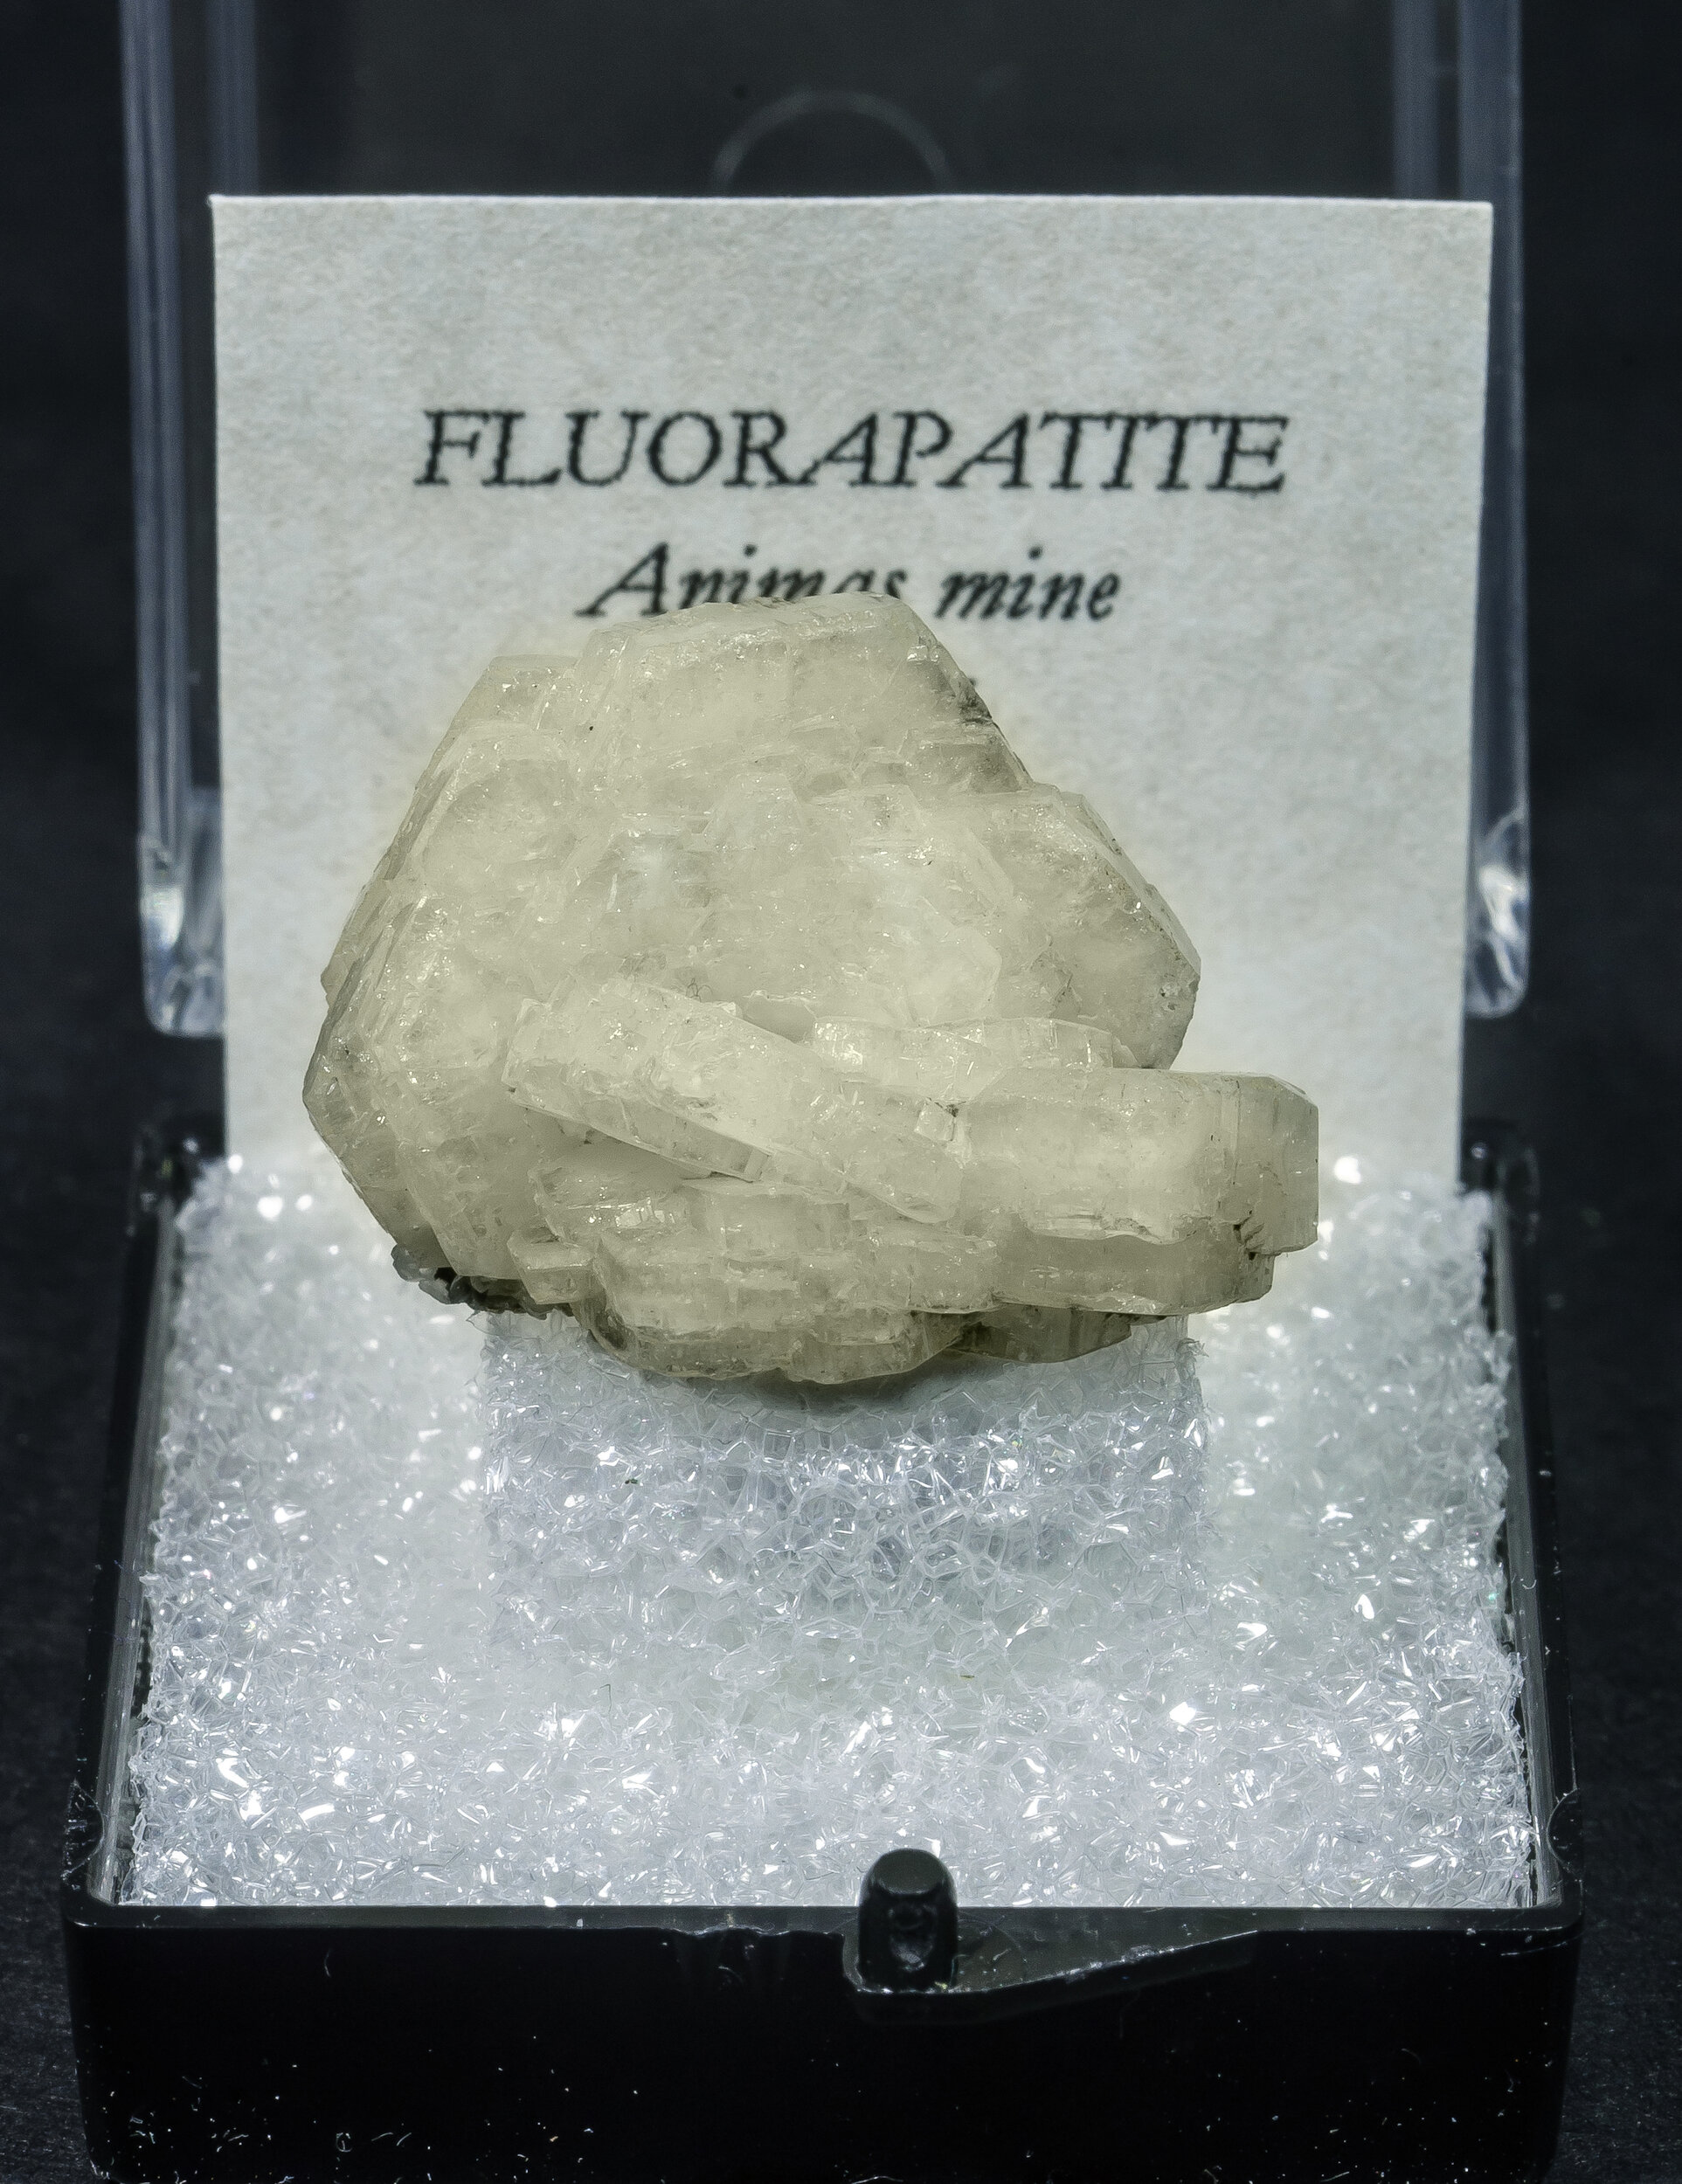 specimens/s_imagesAO0/Fluorapatite-TLB6AO0f1.jpg